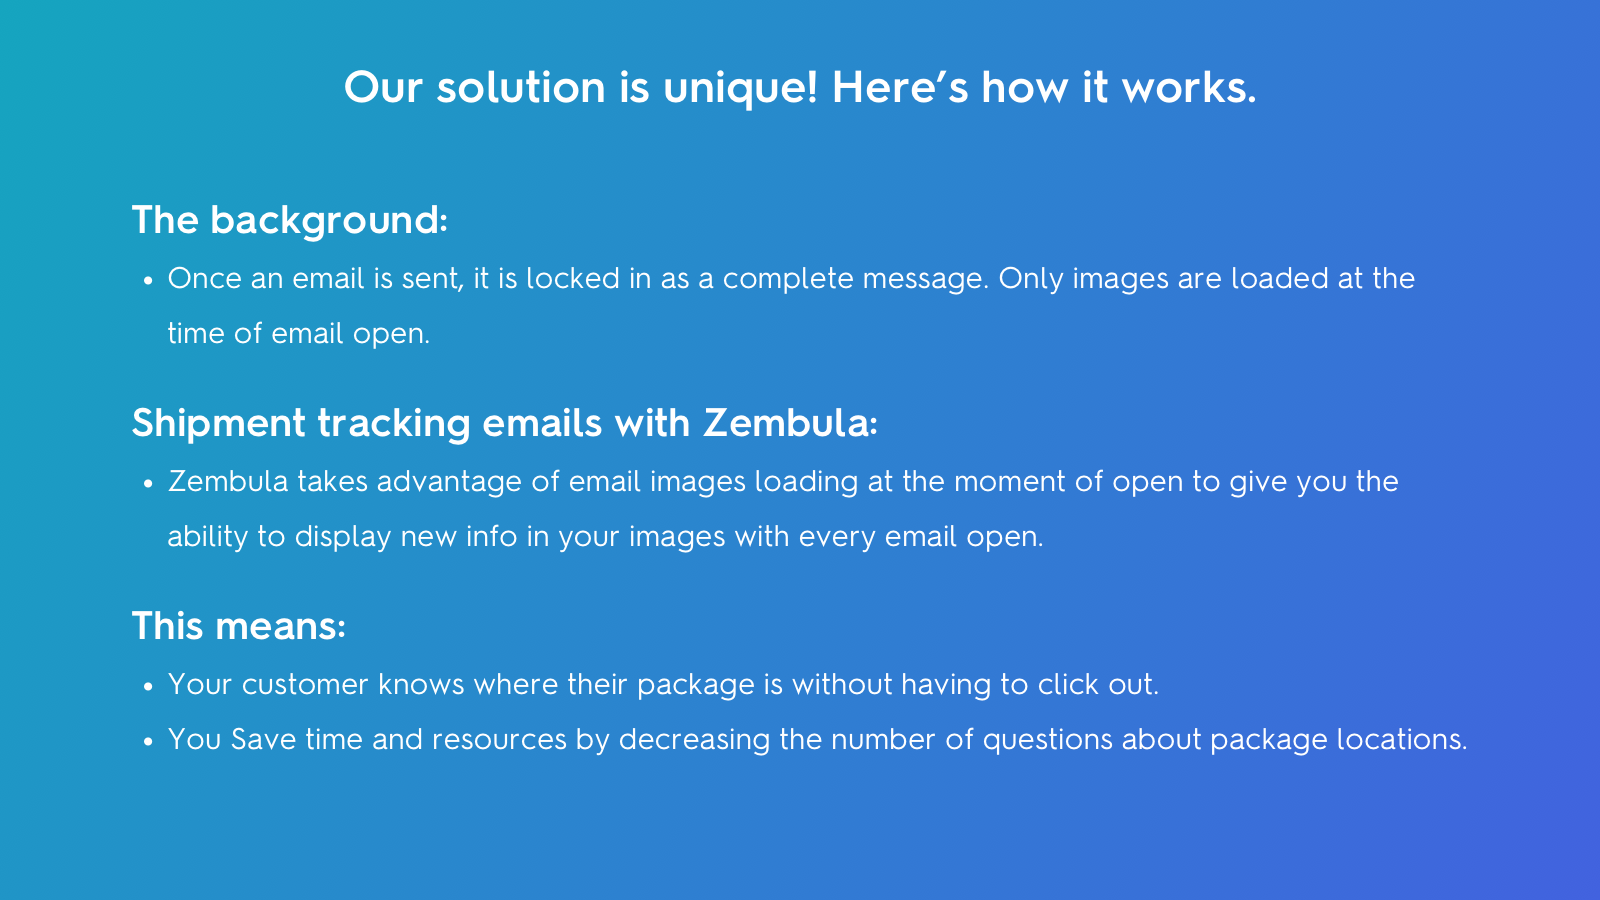 Comment fonctionne Zembula : Les images se chargent à chaque ouverture d'e-mail.